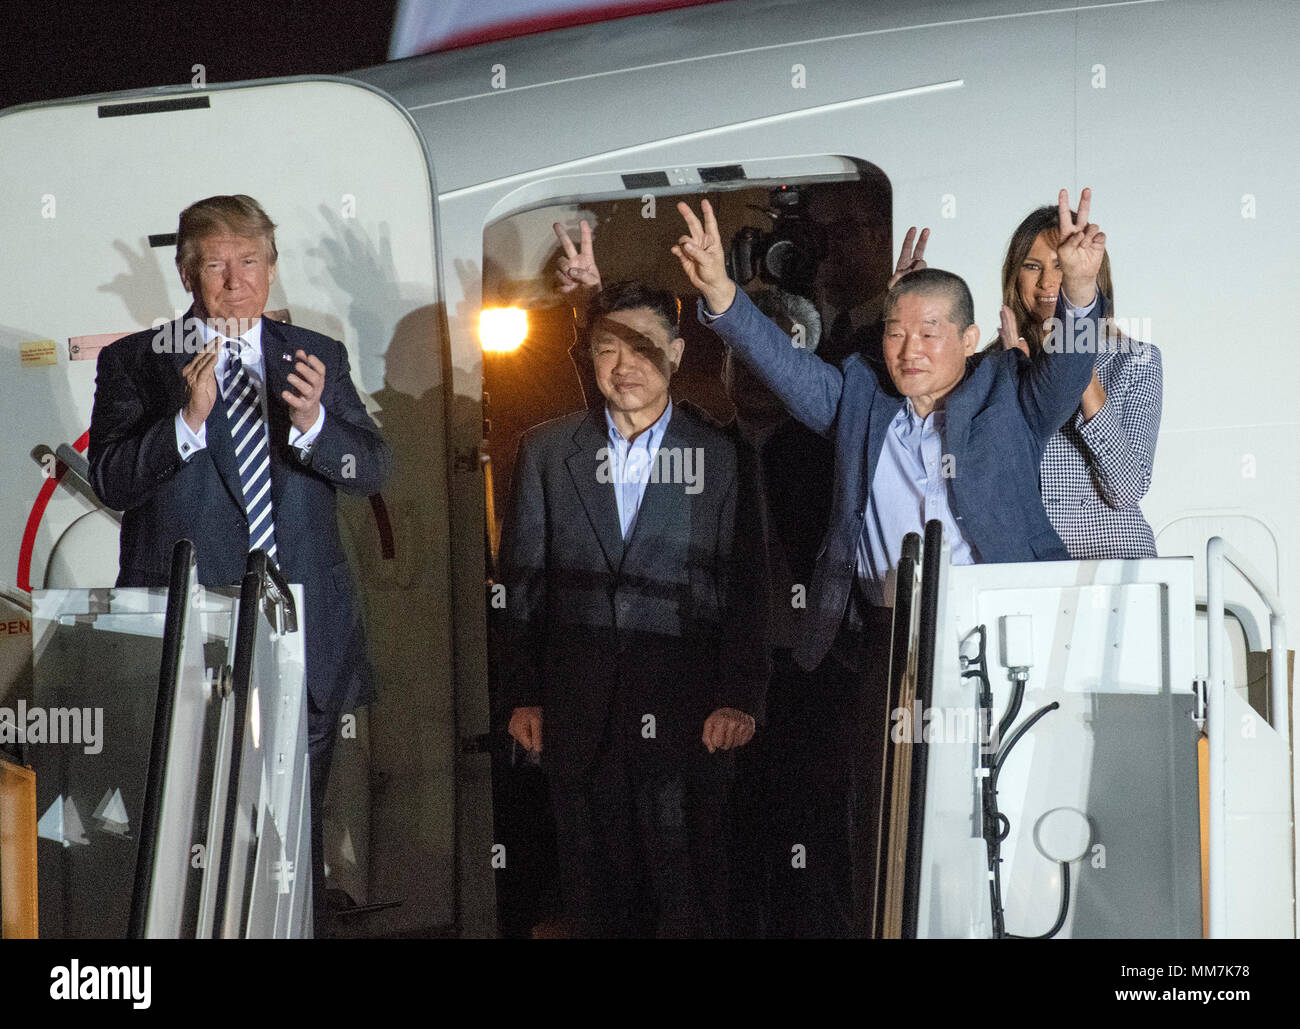 El Presidente de Estados Unidos, Donald J. Trump celebra Kim Dong Chul Kim Hak Canción y Tony Kim de vuelta a los Estados Unidos en la base conjunta Andrews en Maryland el jueves, 10 de mayo de 2018. Los tres hombres fueron encarcelados en Corea del Norte por períodos que oscilan entre uno y dos años. Fueron liberados a la Secretaria de Estado de EEUU Mike Pompeo como un gesto de buena voluntad en los prolegómenos de las conversaciones entre el Presidente Trump y el líder norcoreano Kim Jong-nu. Crédito: Ron Sachs/CNP /MediaPunch Foto de stock